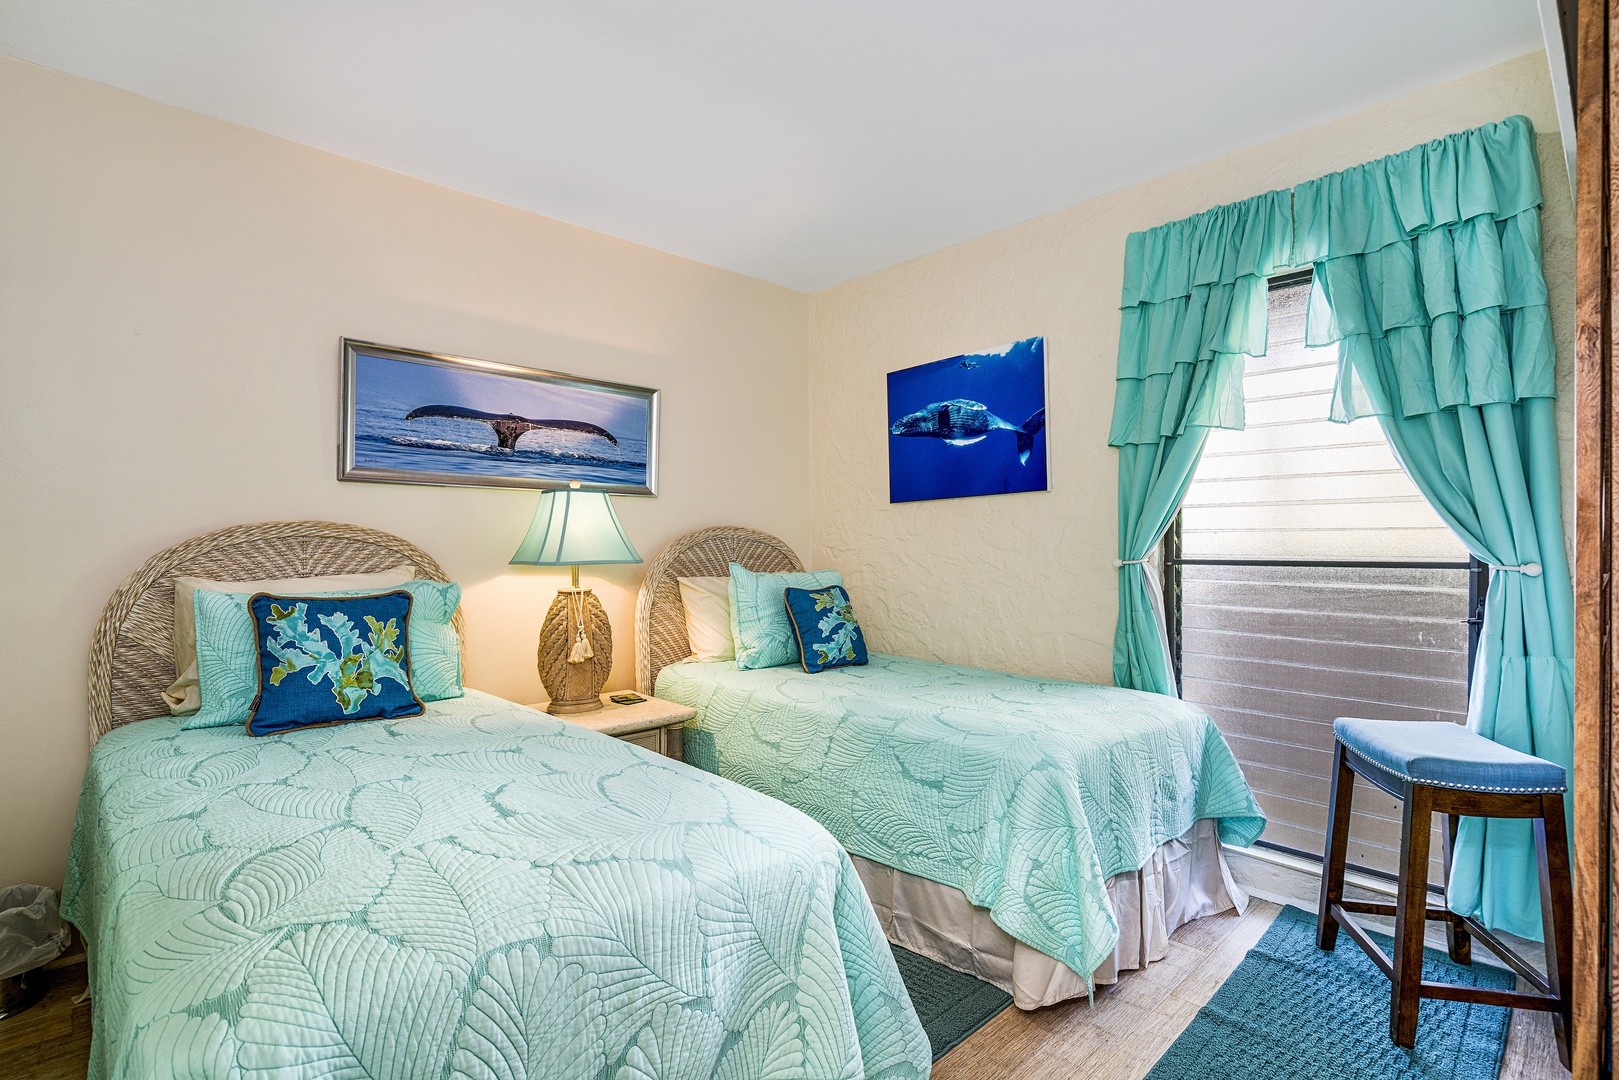 Kailua Kona Vacation Rentals, Casa De Emdeko 336 - 2 Twin beds in this Guest bedroom